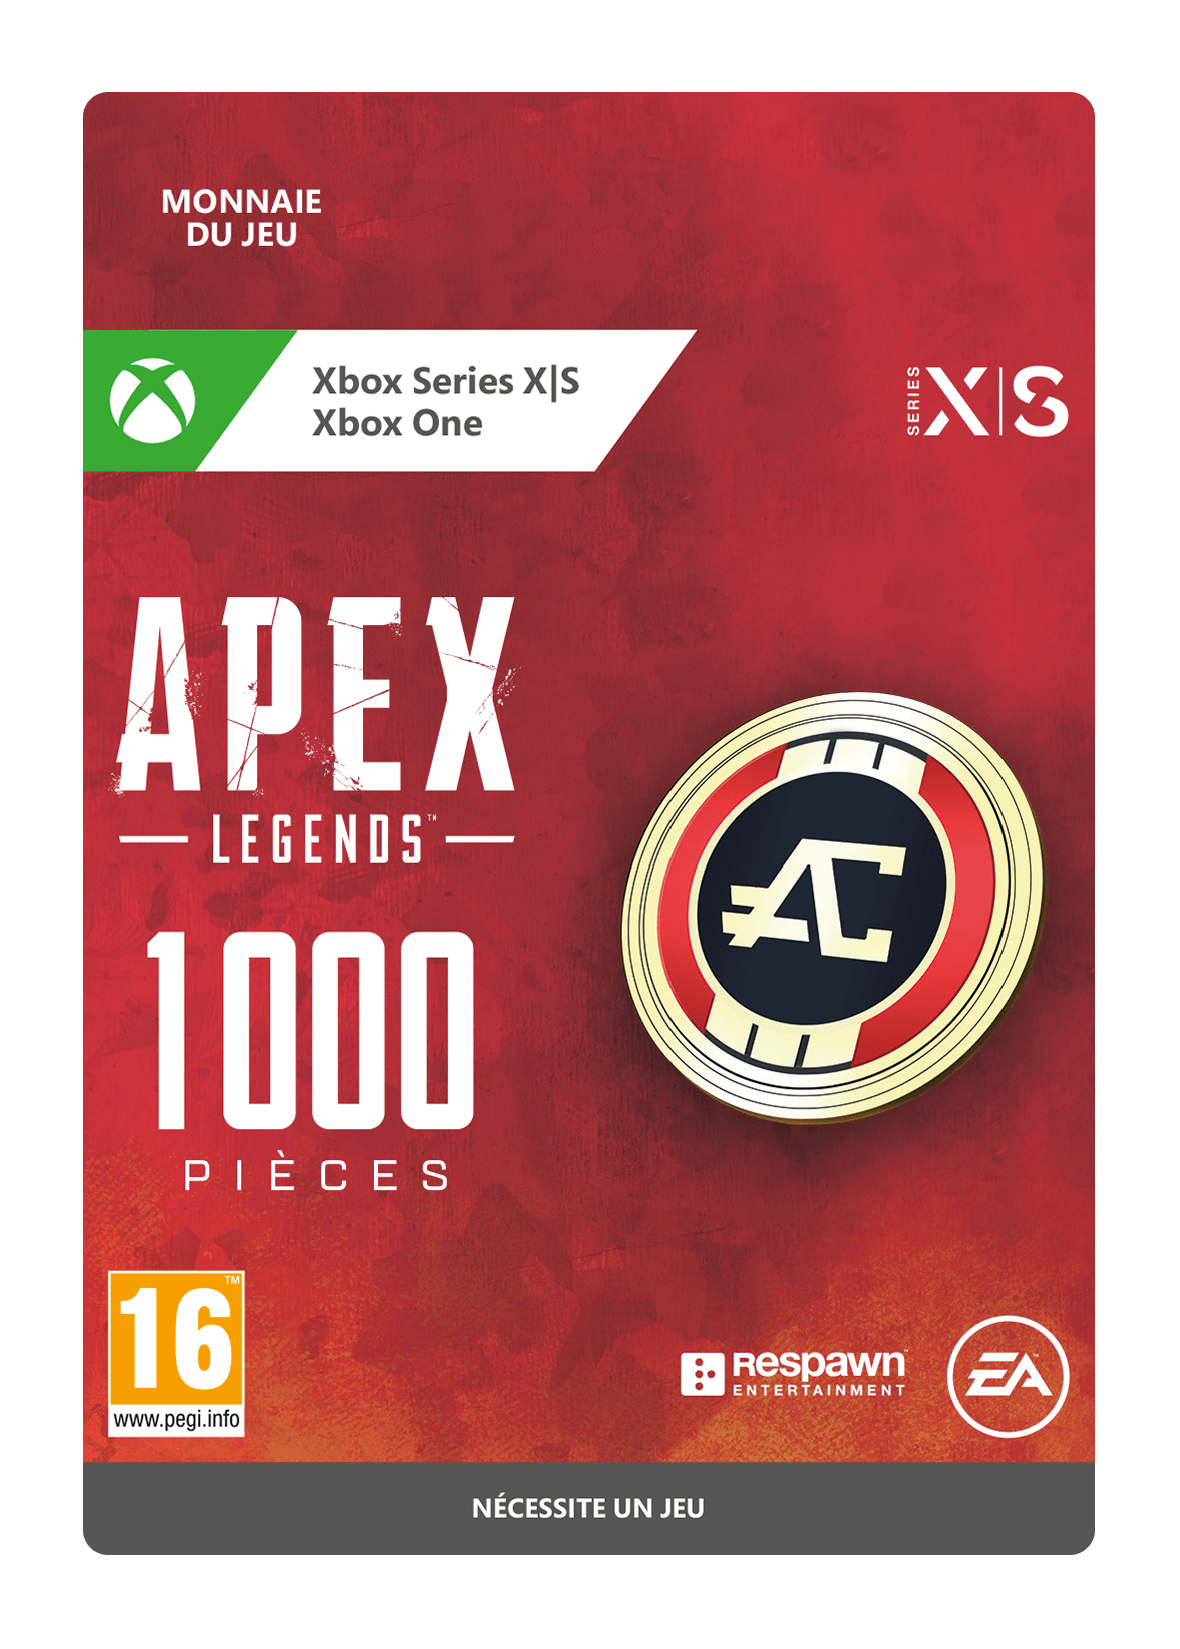 Apex Legends 1000 PIÈCES